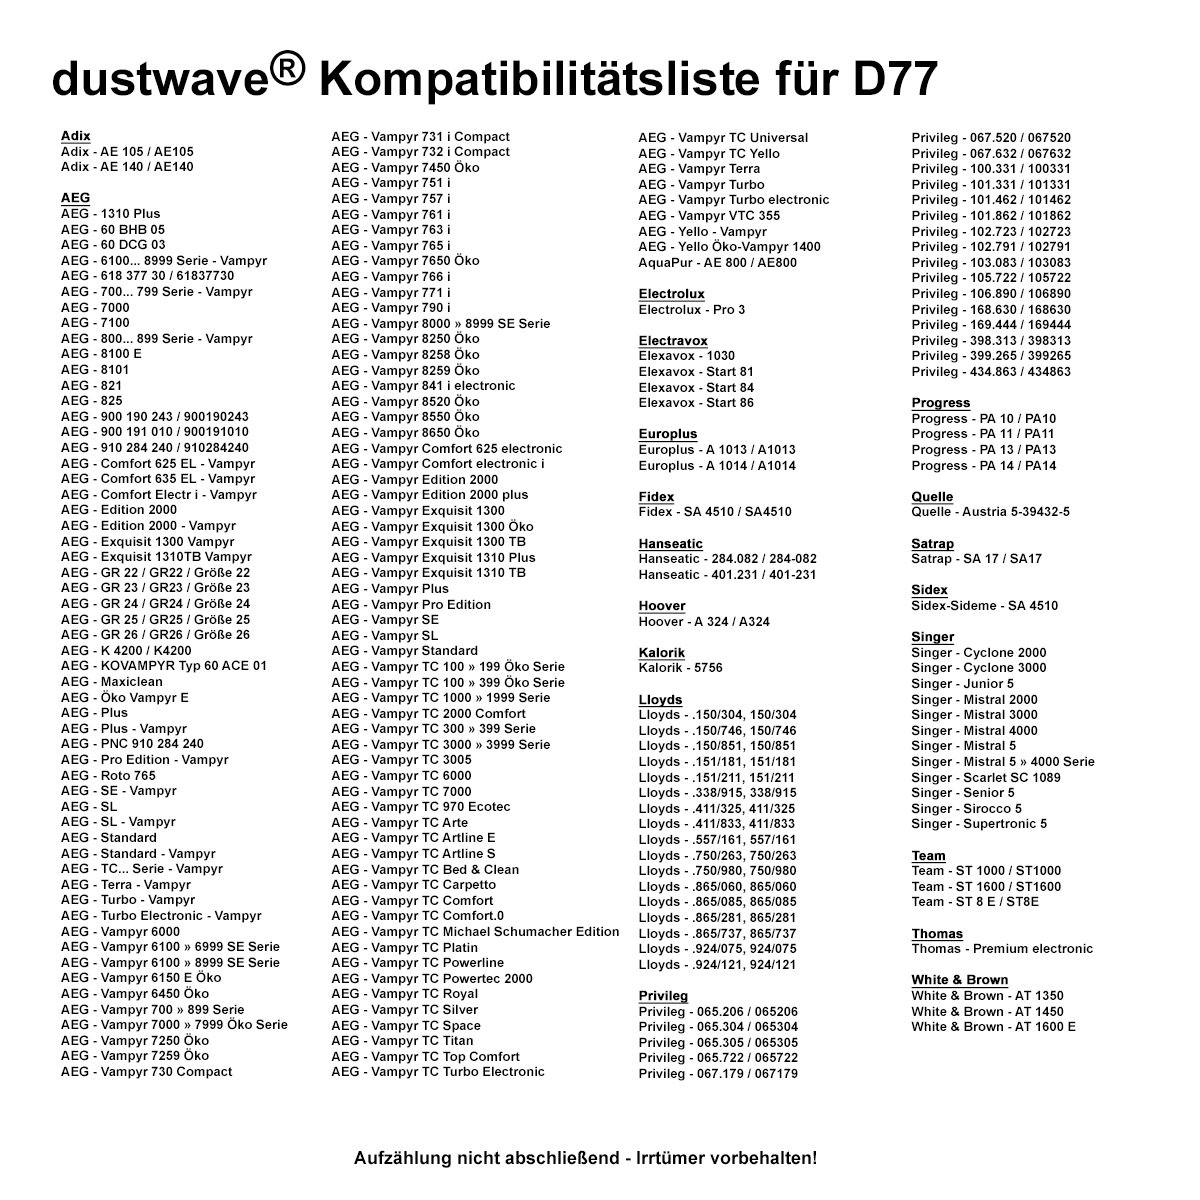 Dustwave® 10 Staubsaugerbeutel für AEG Exquisit 1310TB Vampyr - hocheffizient, mehrlagiges Mikrovlies mit Hygieneverschluss - Made in Germany